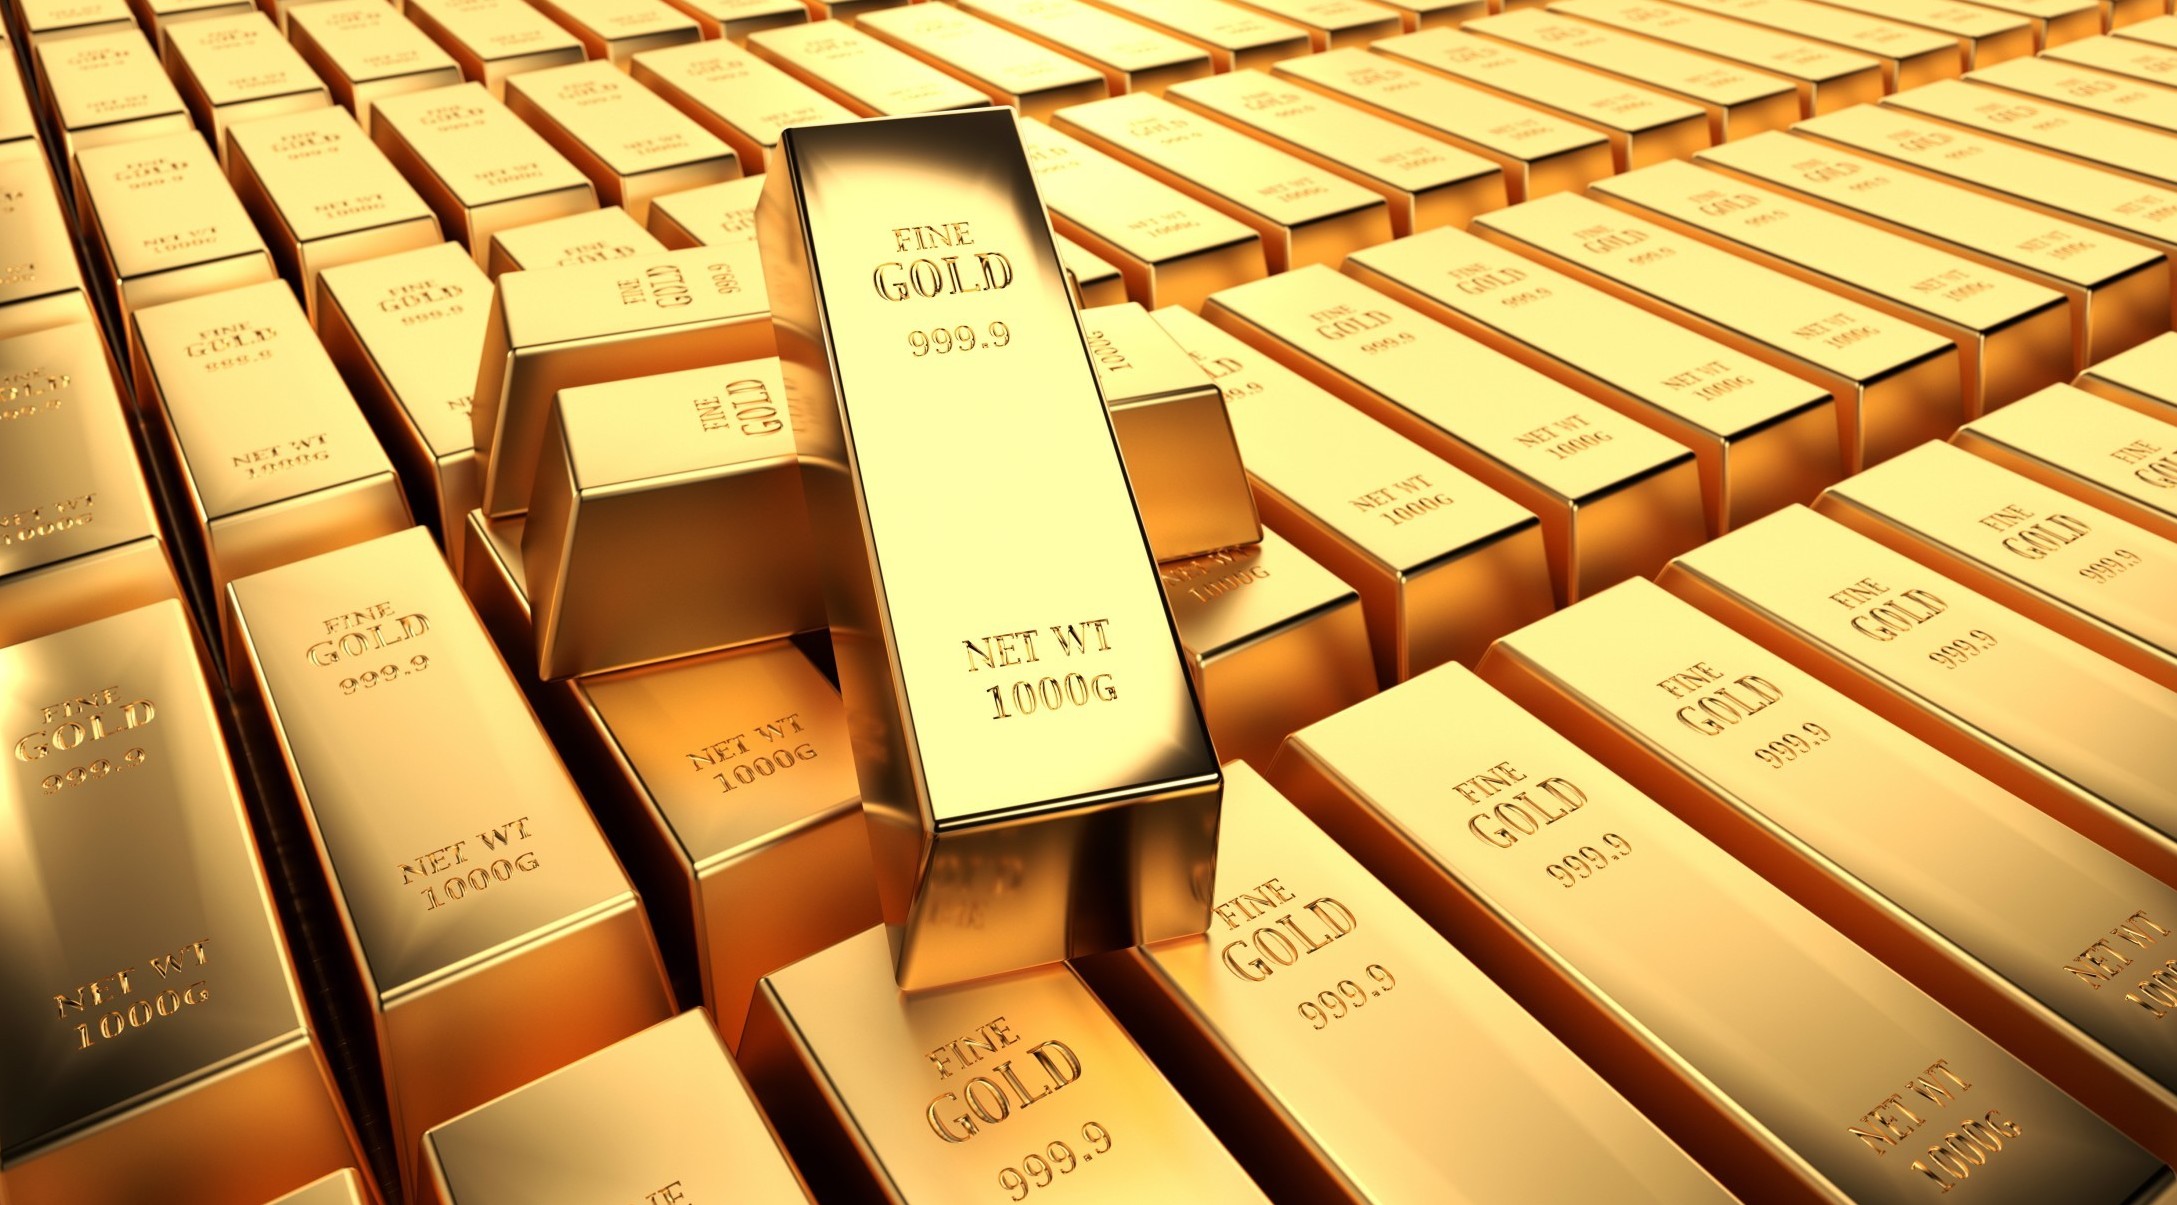 Le banche centrali acquistano oro fisico - Seguirà una corsa al rialzo per l'oro digitale Bitcoin?  - conviene comprare oro fisico lingotti monete o certificati etf fondi specializzati nel 2021 i pro e contro